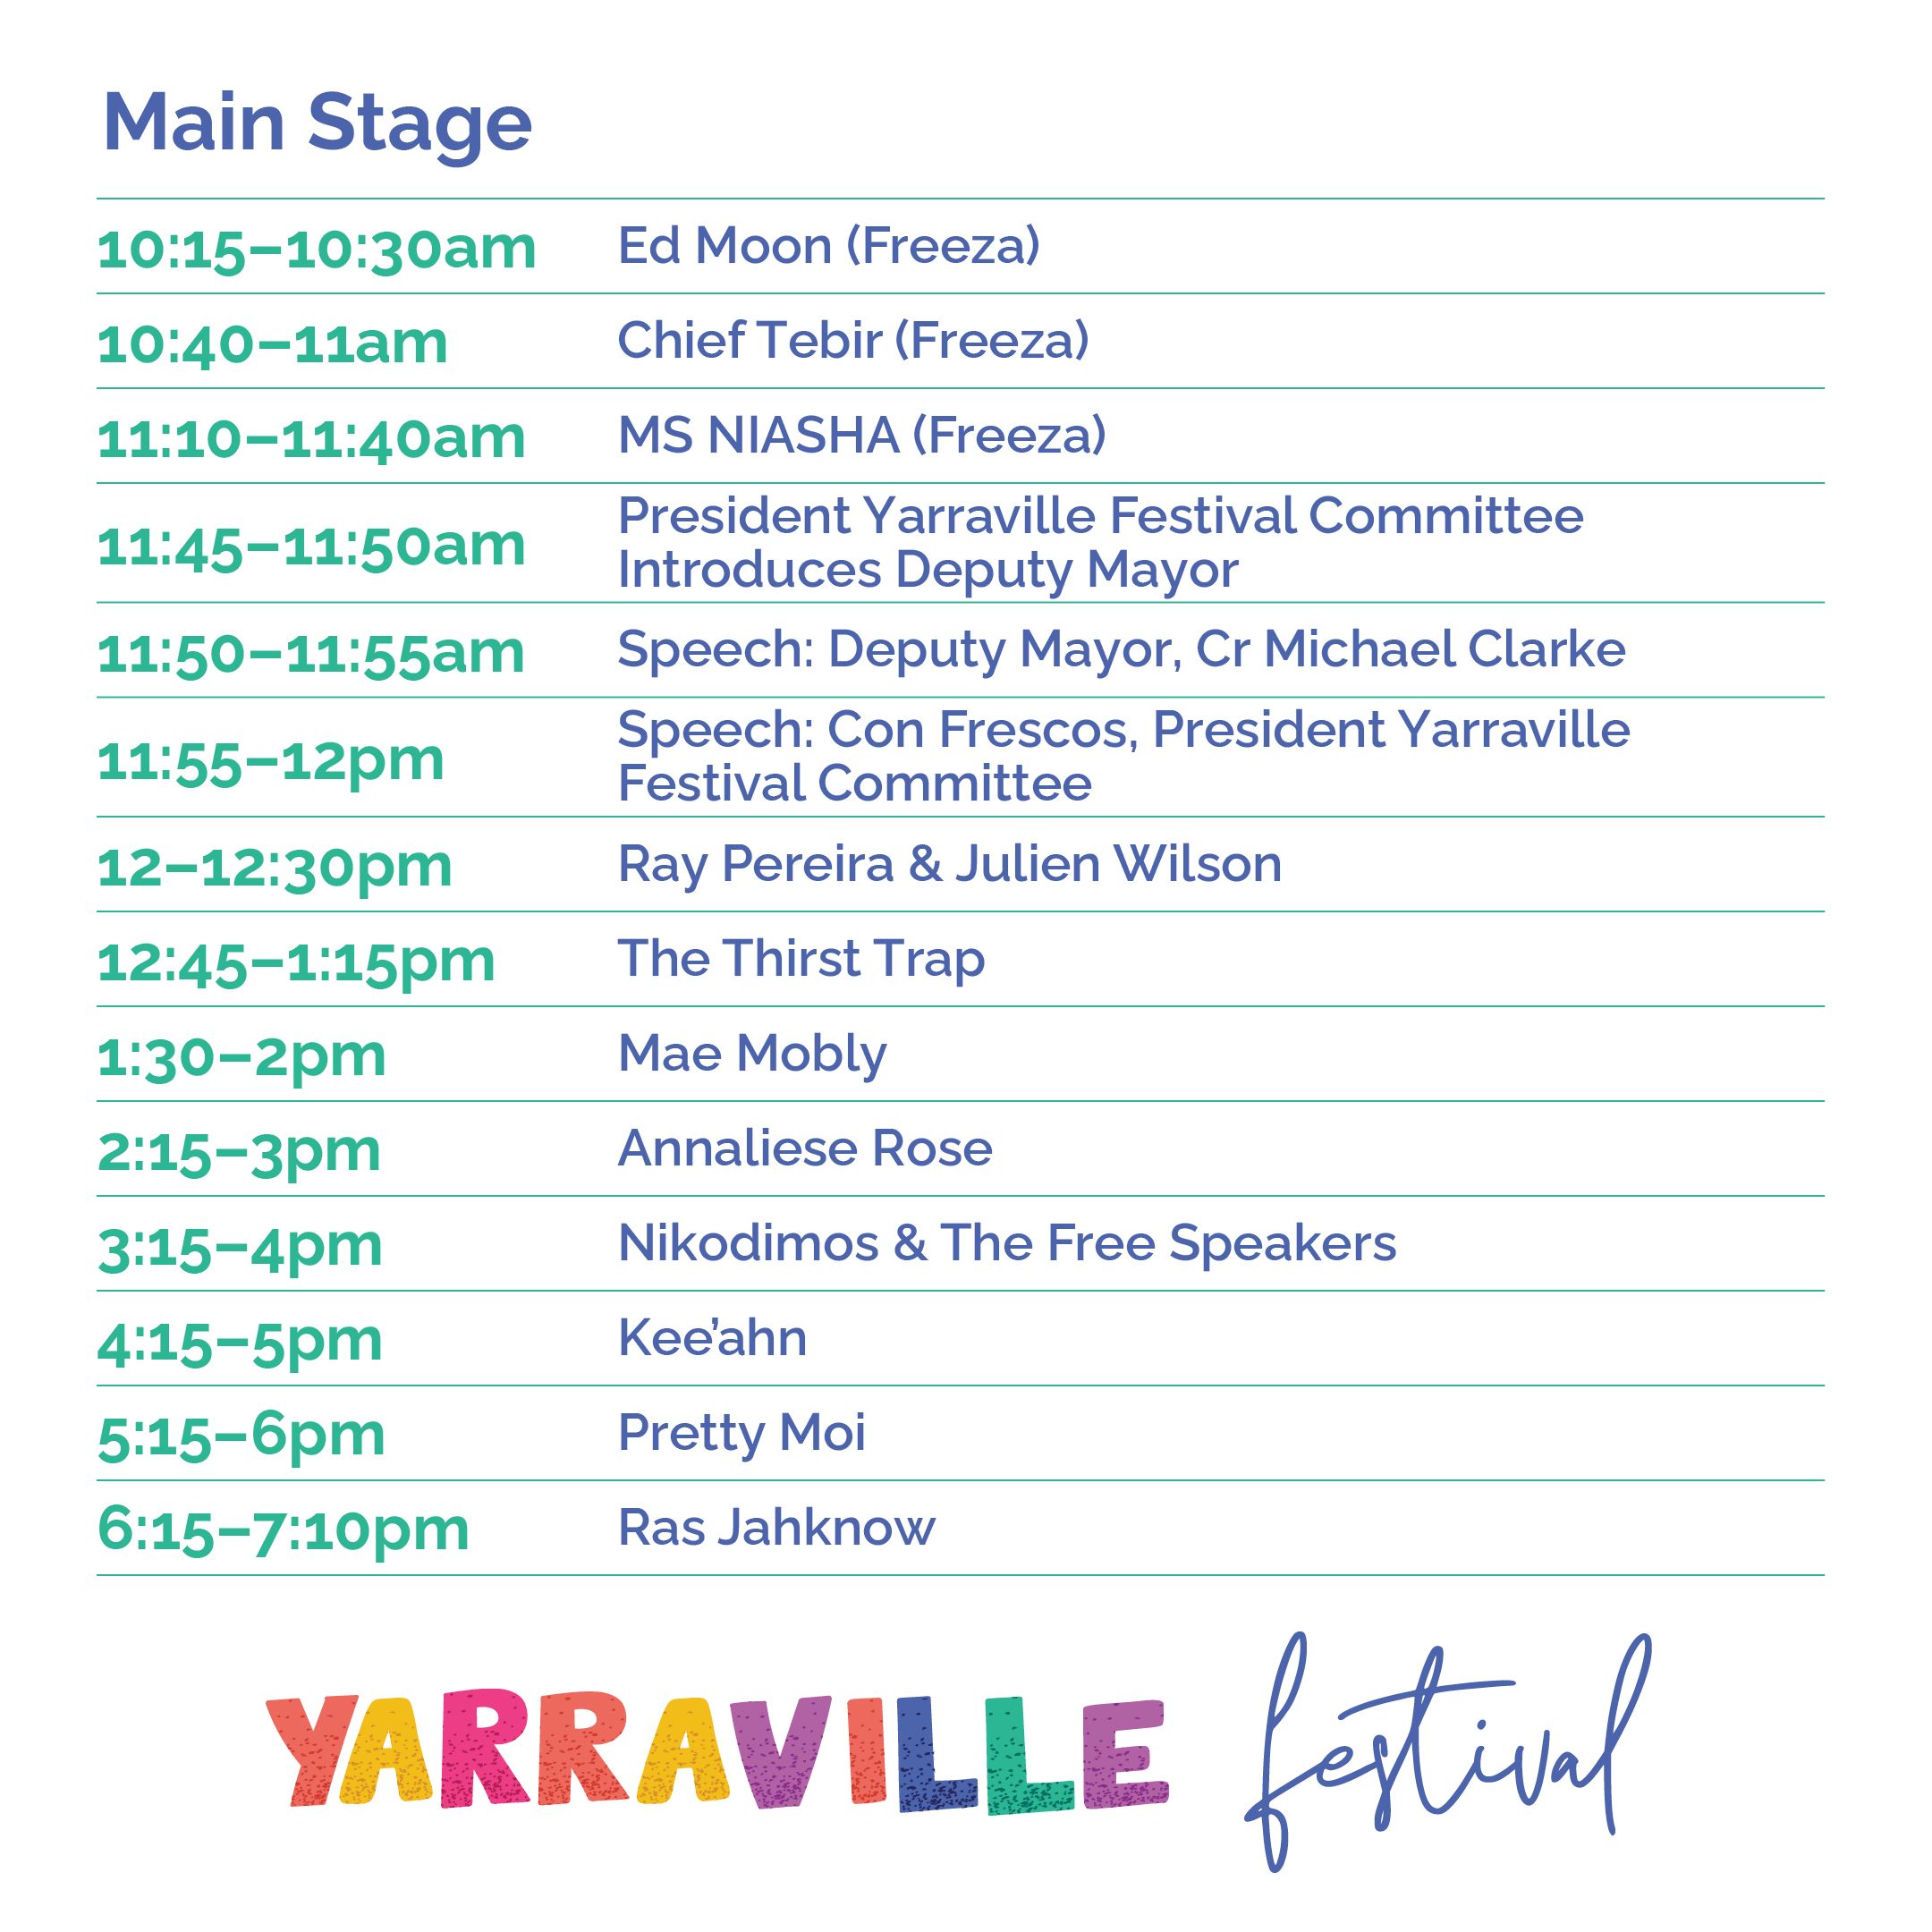 Main Stage Schedule